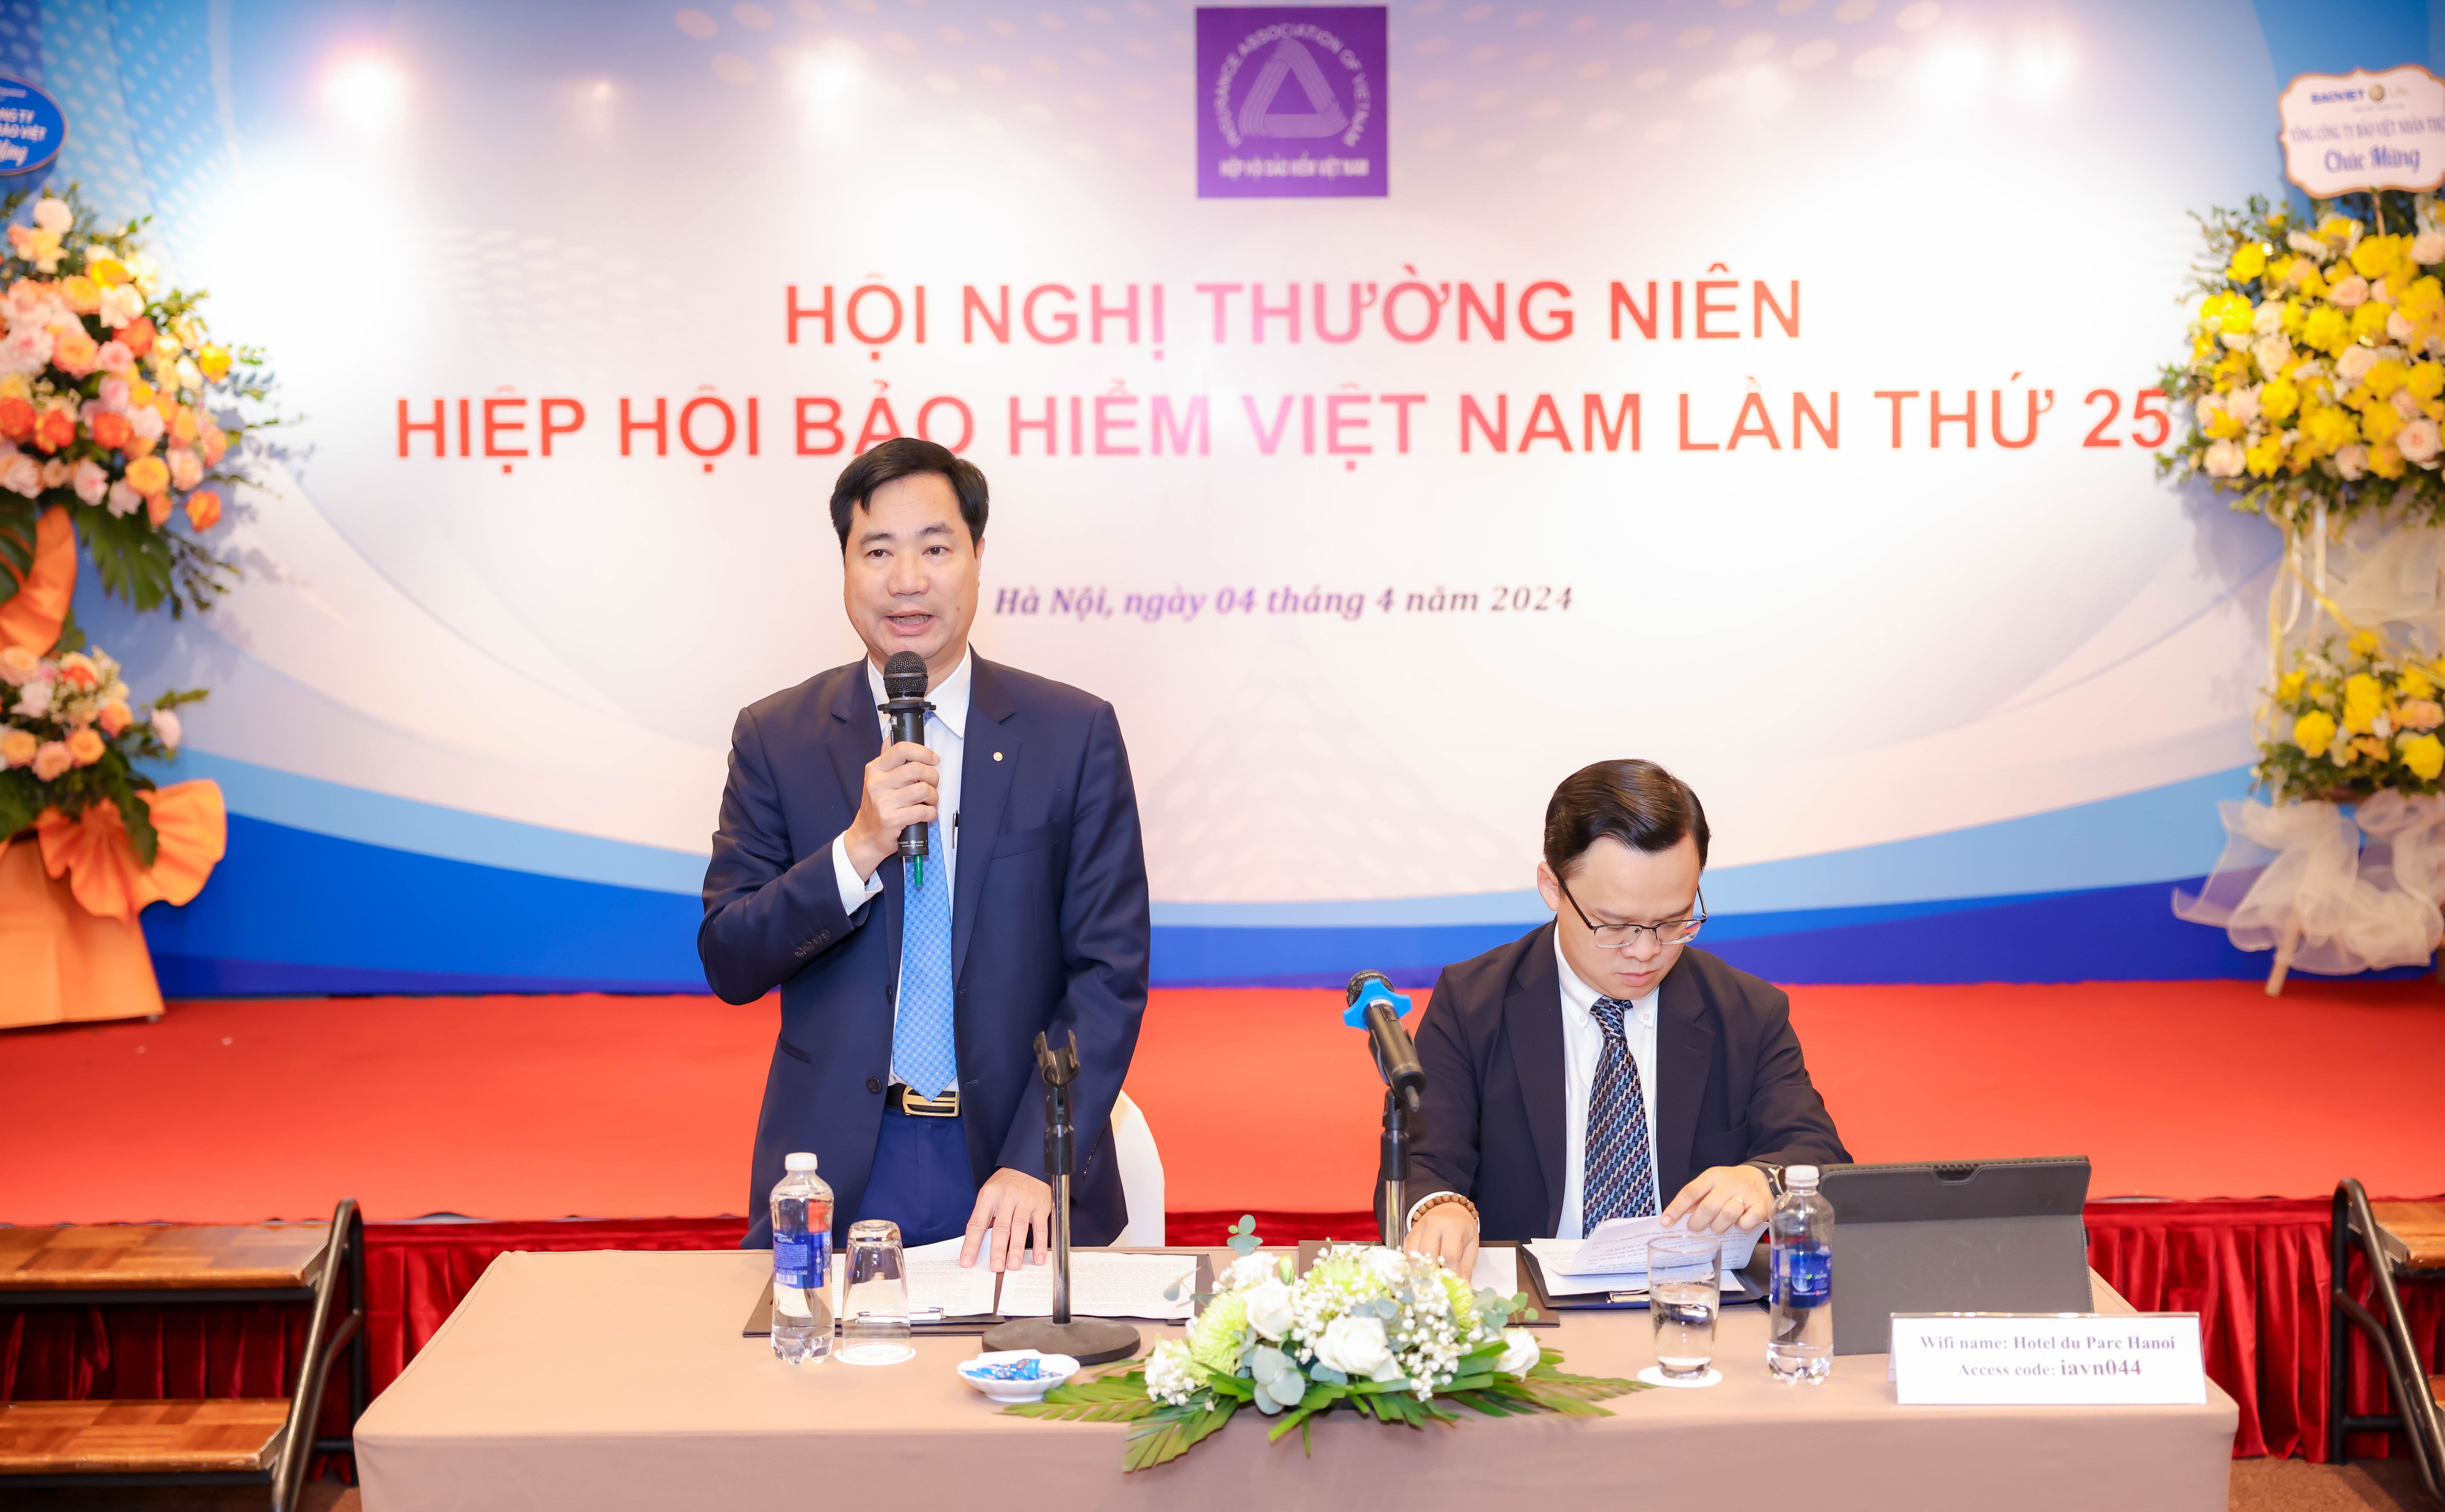 Hội nghị Thường niên Hiệp hội Bảo hiểm Việt Nam năm 2024